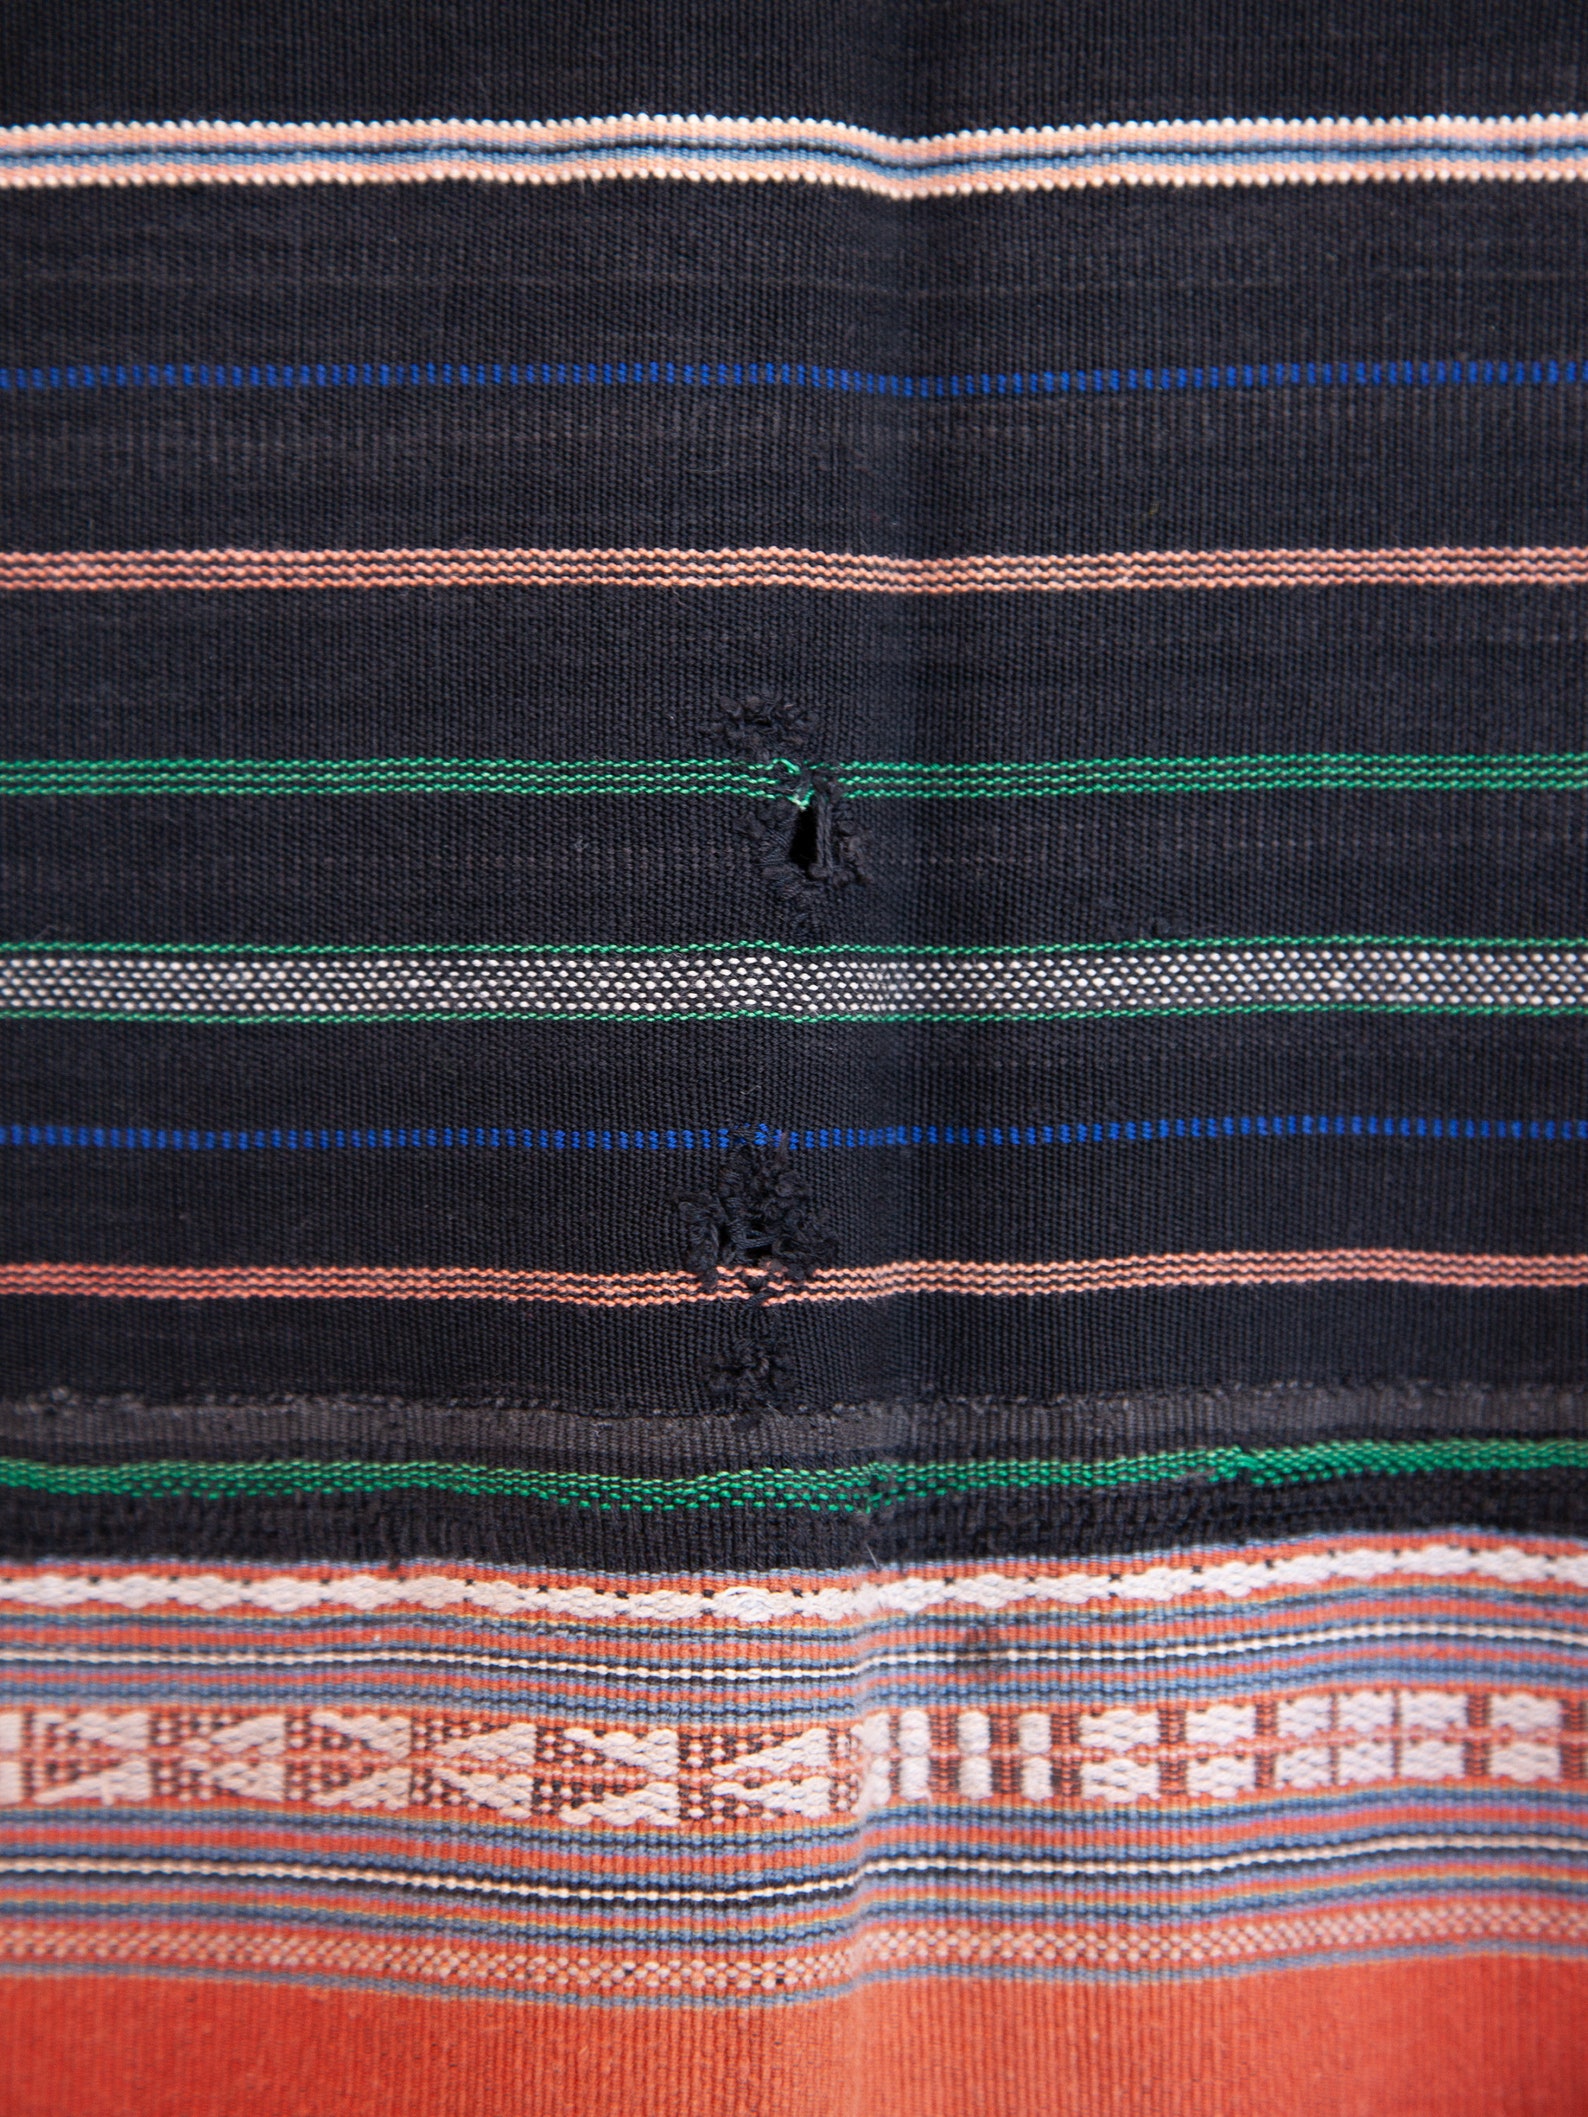 Vintage Ede Tribal Blanket Vietnam Extra Large | Etsy